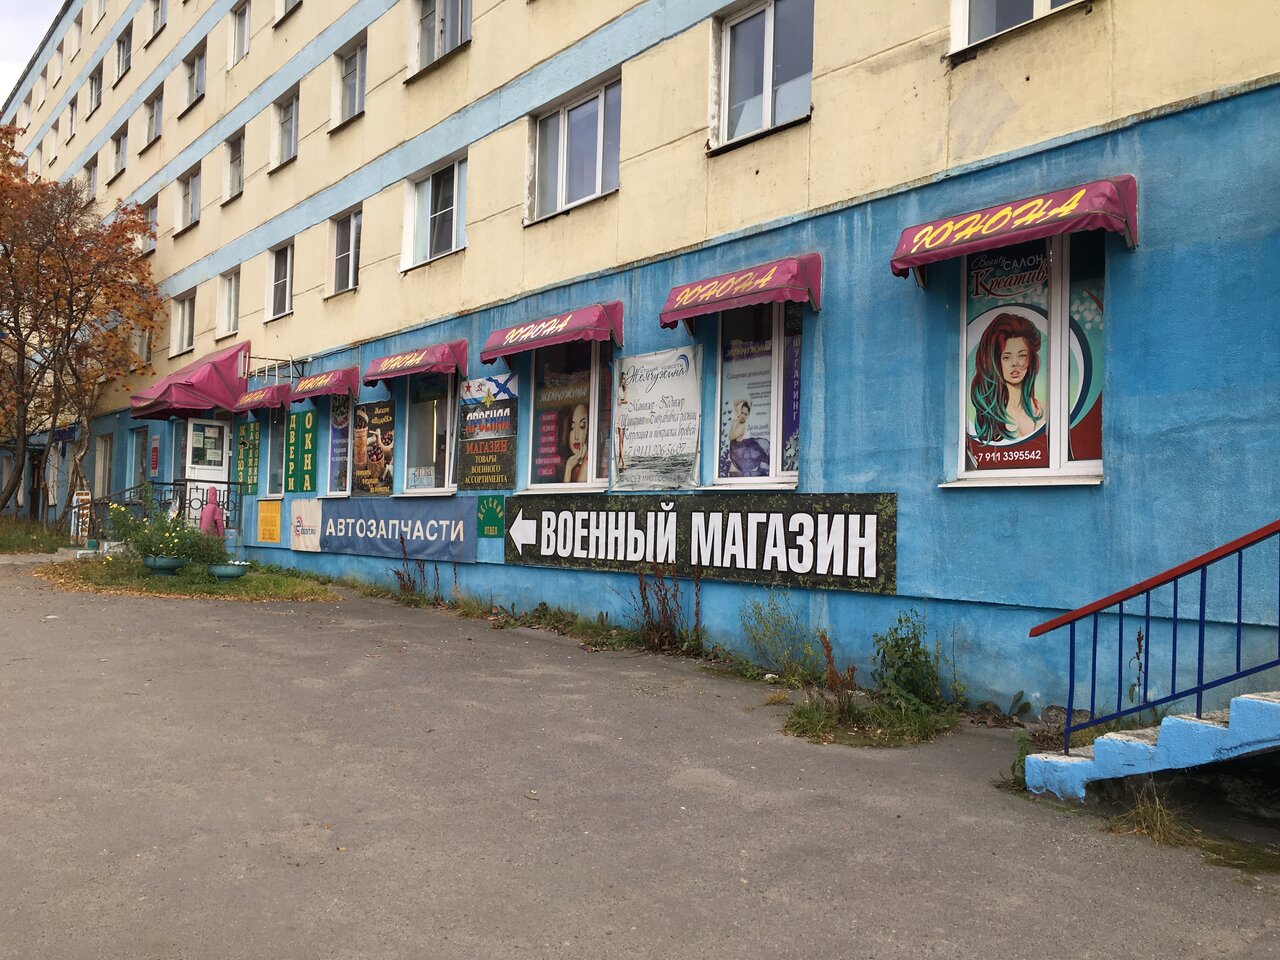 Расположение армейского магазина "Арсенал" на Колышкина в Североморске